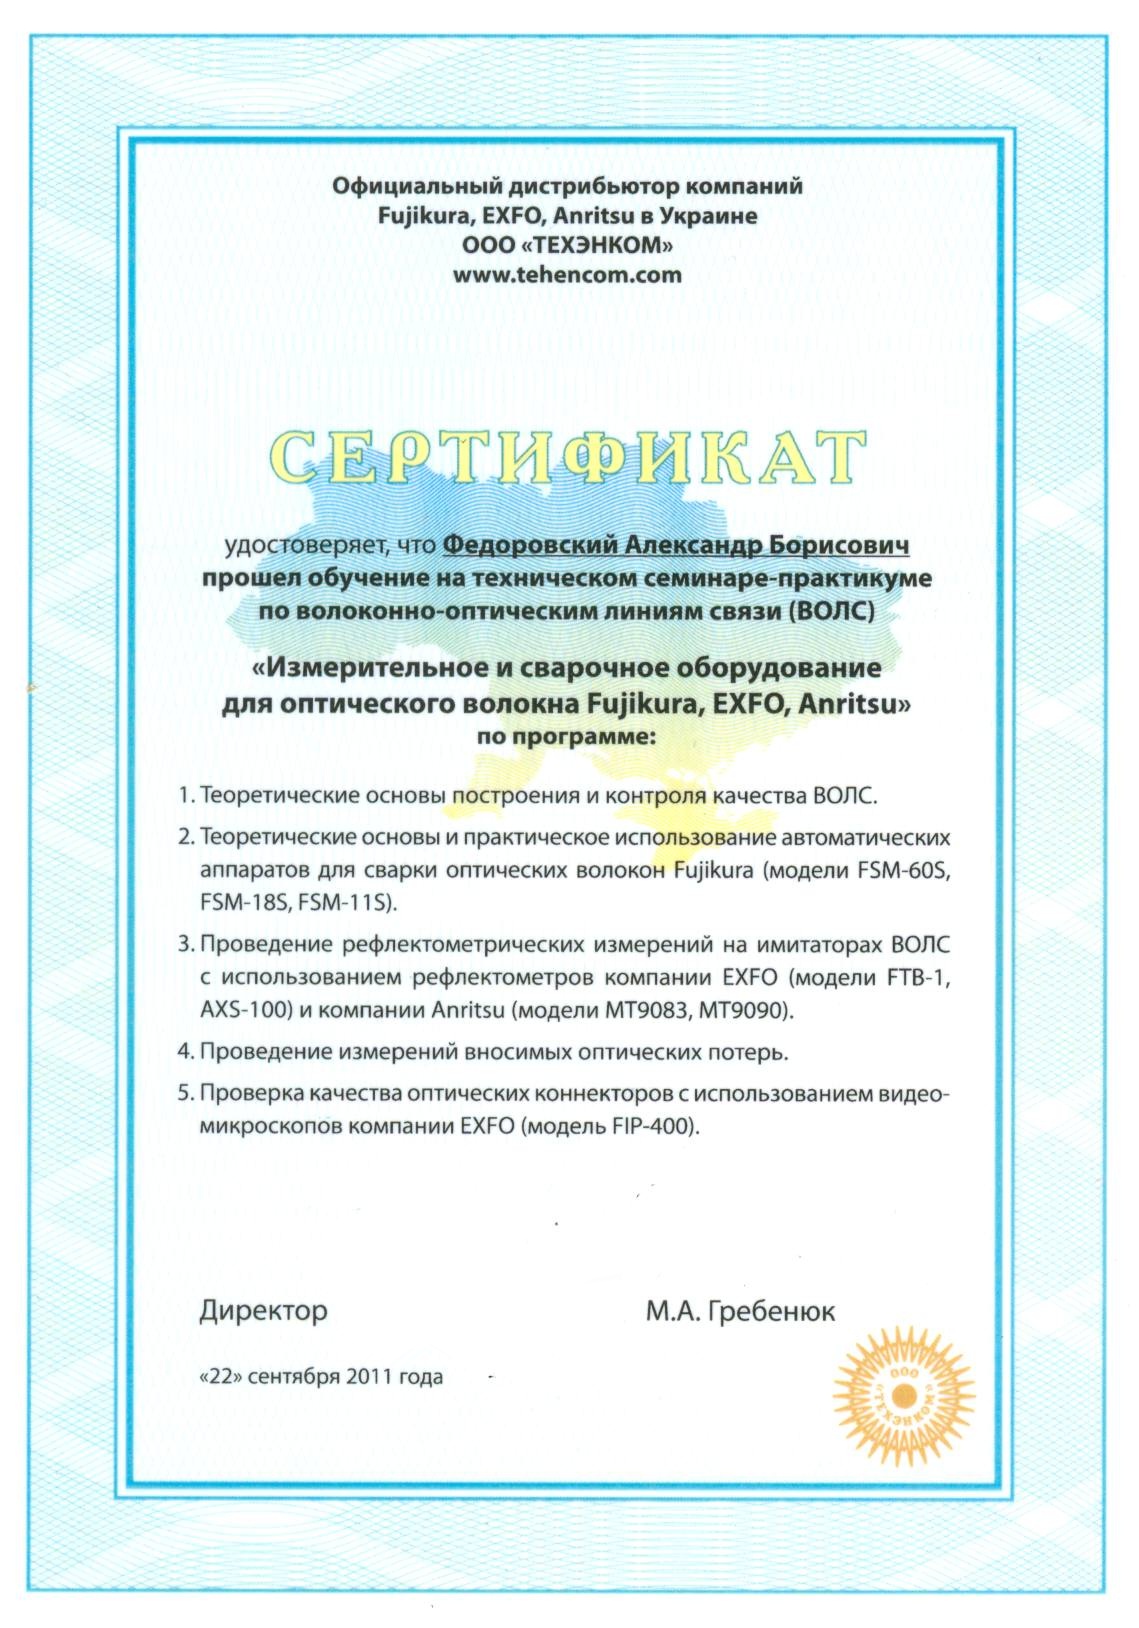 Приклад сертифікату з навчання у компанії Техенком